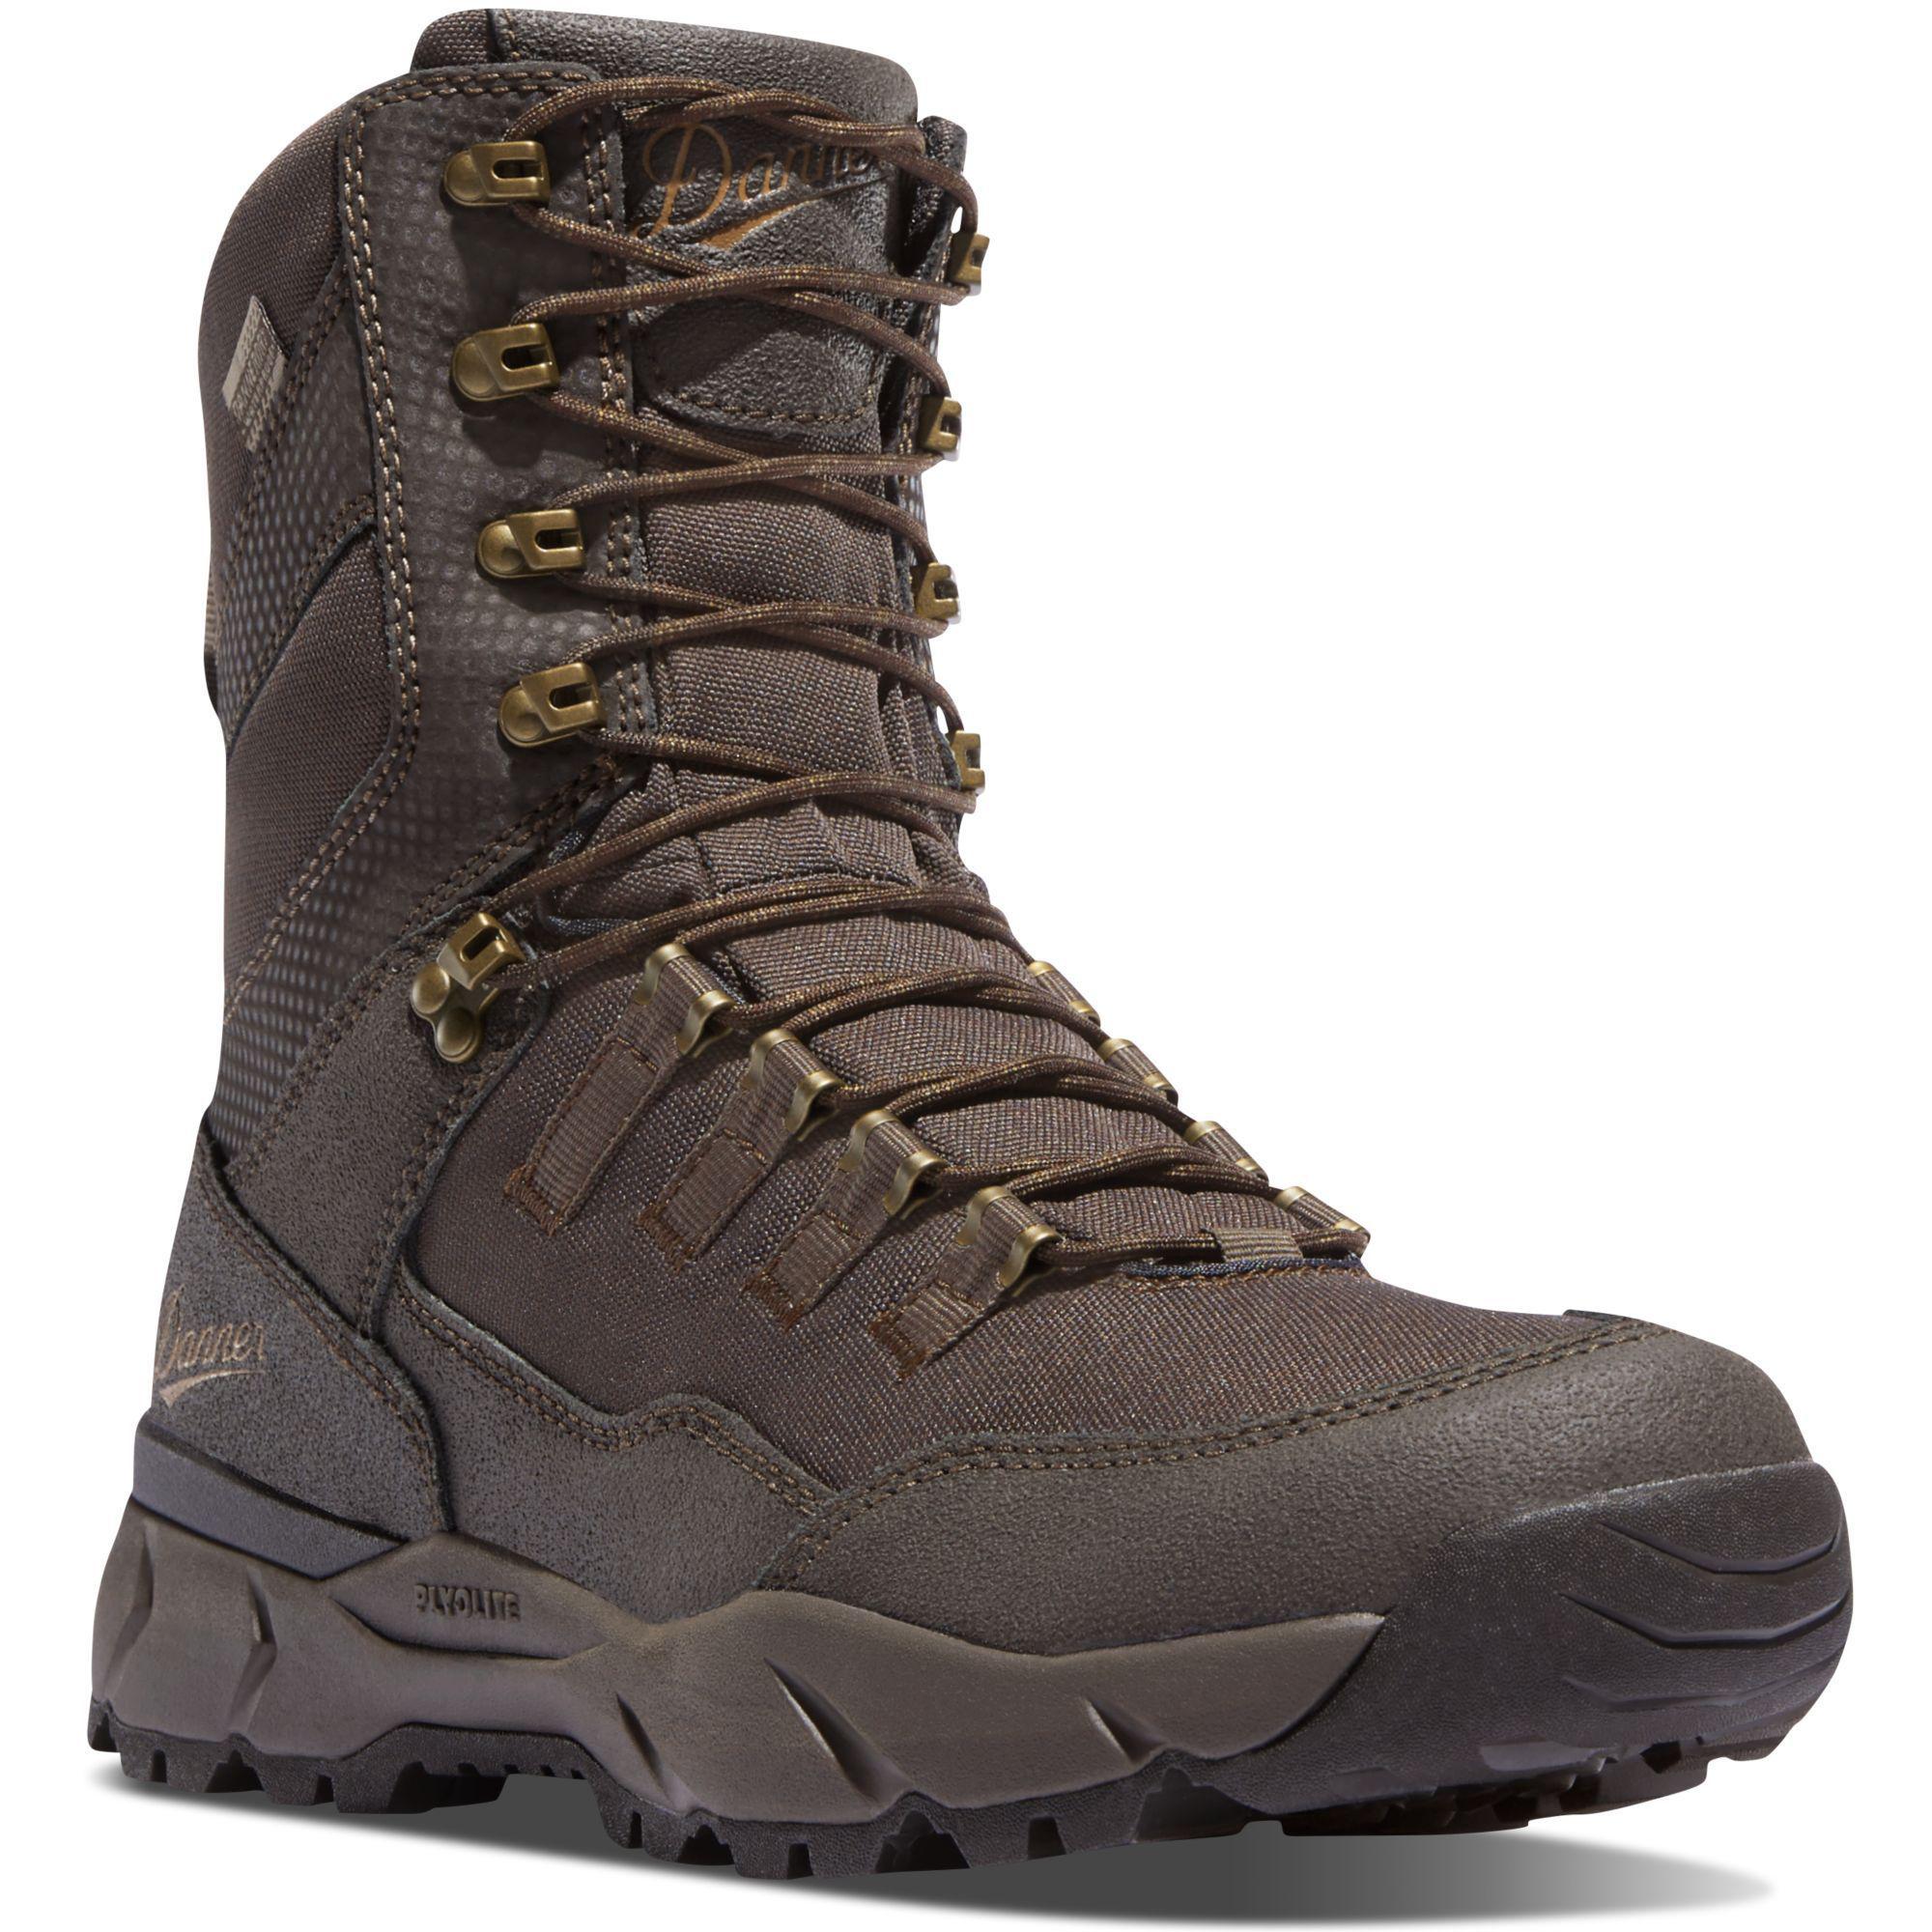 Danner Men's Vital 8" Waterproof Hunt Boot - Brown - 41550 7 / Medium / Brown - Overlook Boots